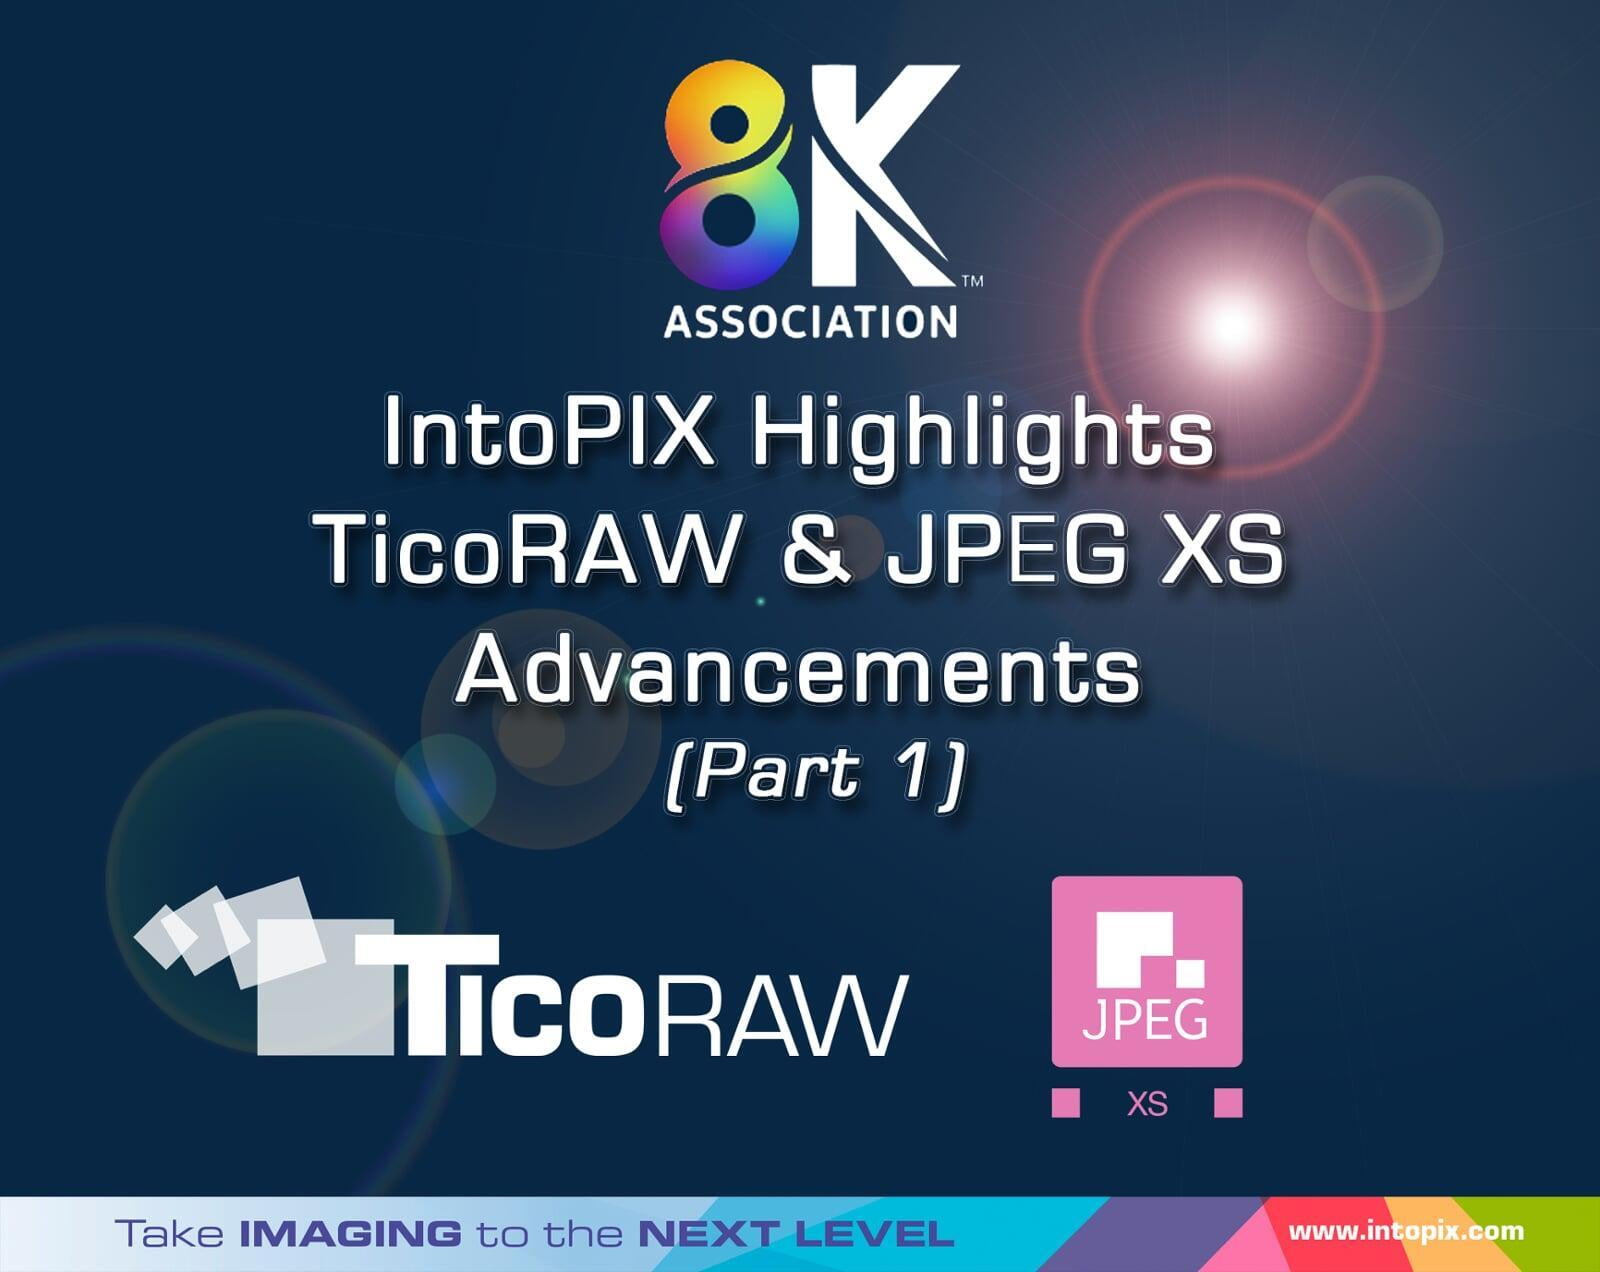 8K Association: IntoPIXのTicoRAWとJPEG XSの進化に注目（Part 1） 